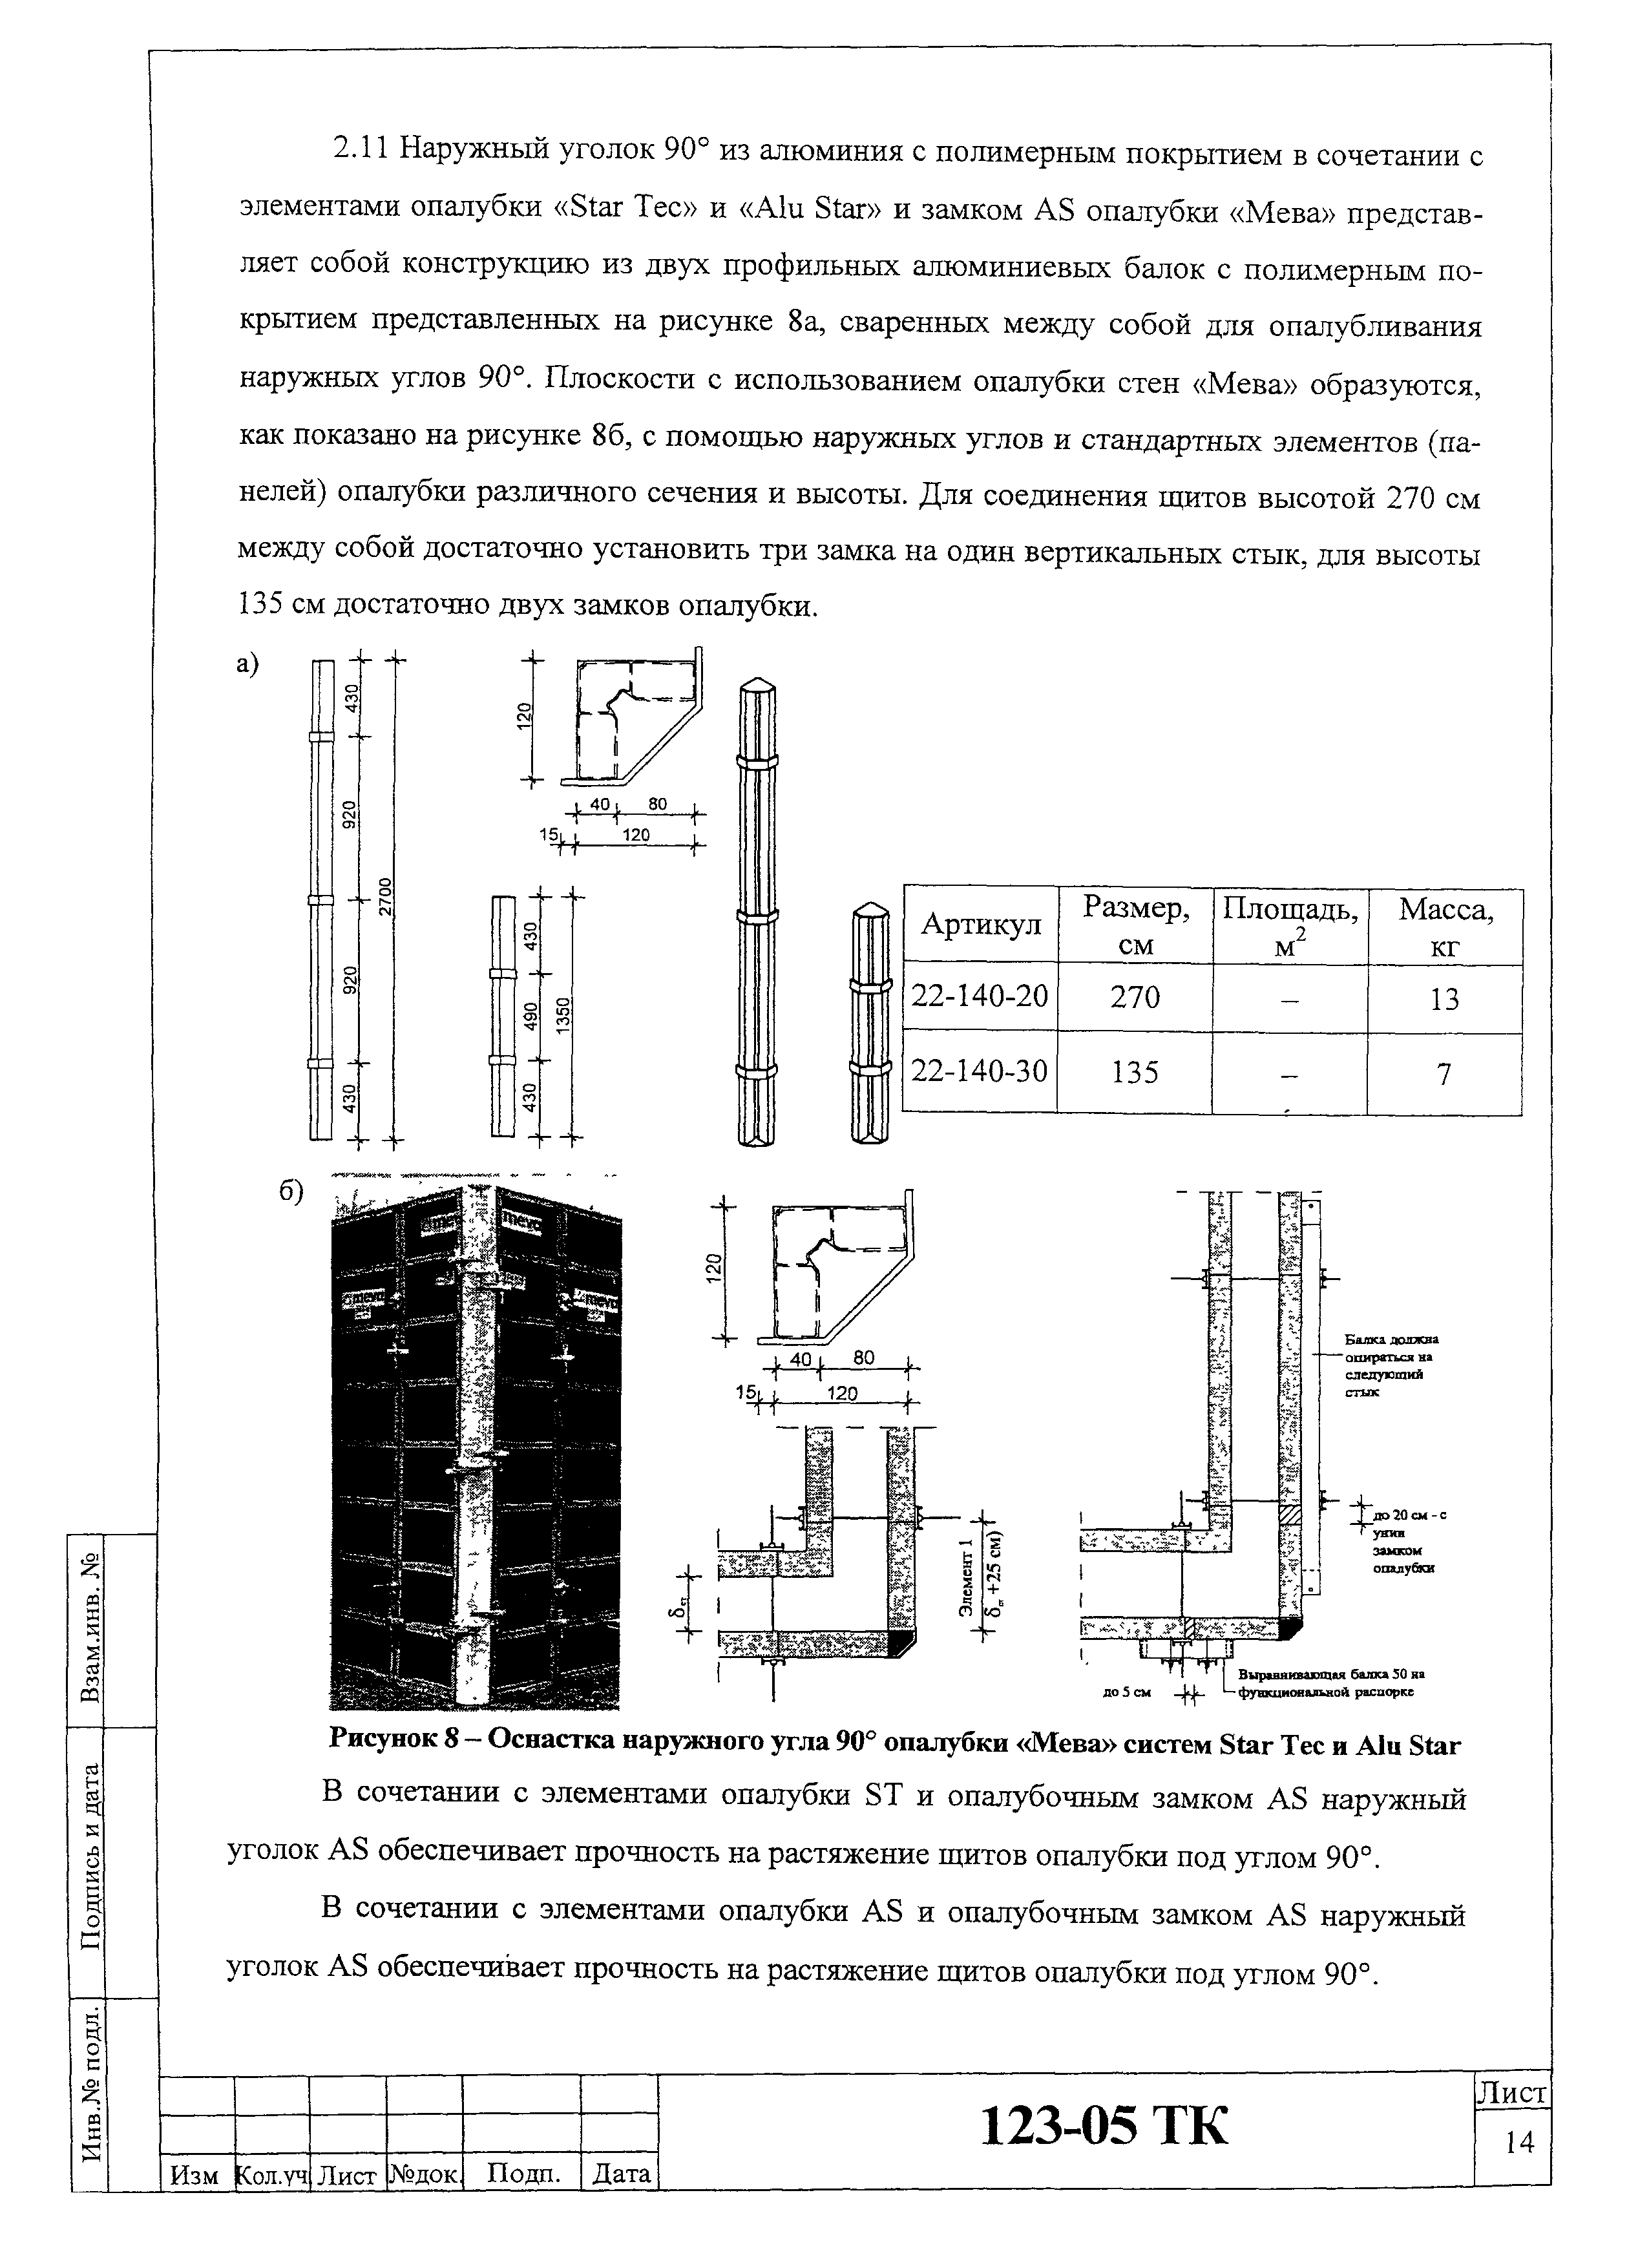 Технологическая карта 123-05 ТК